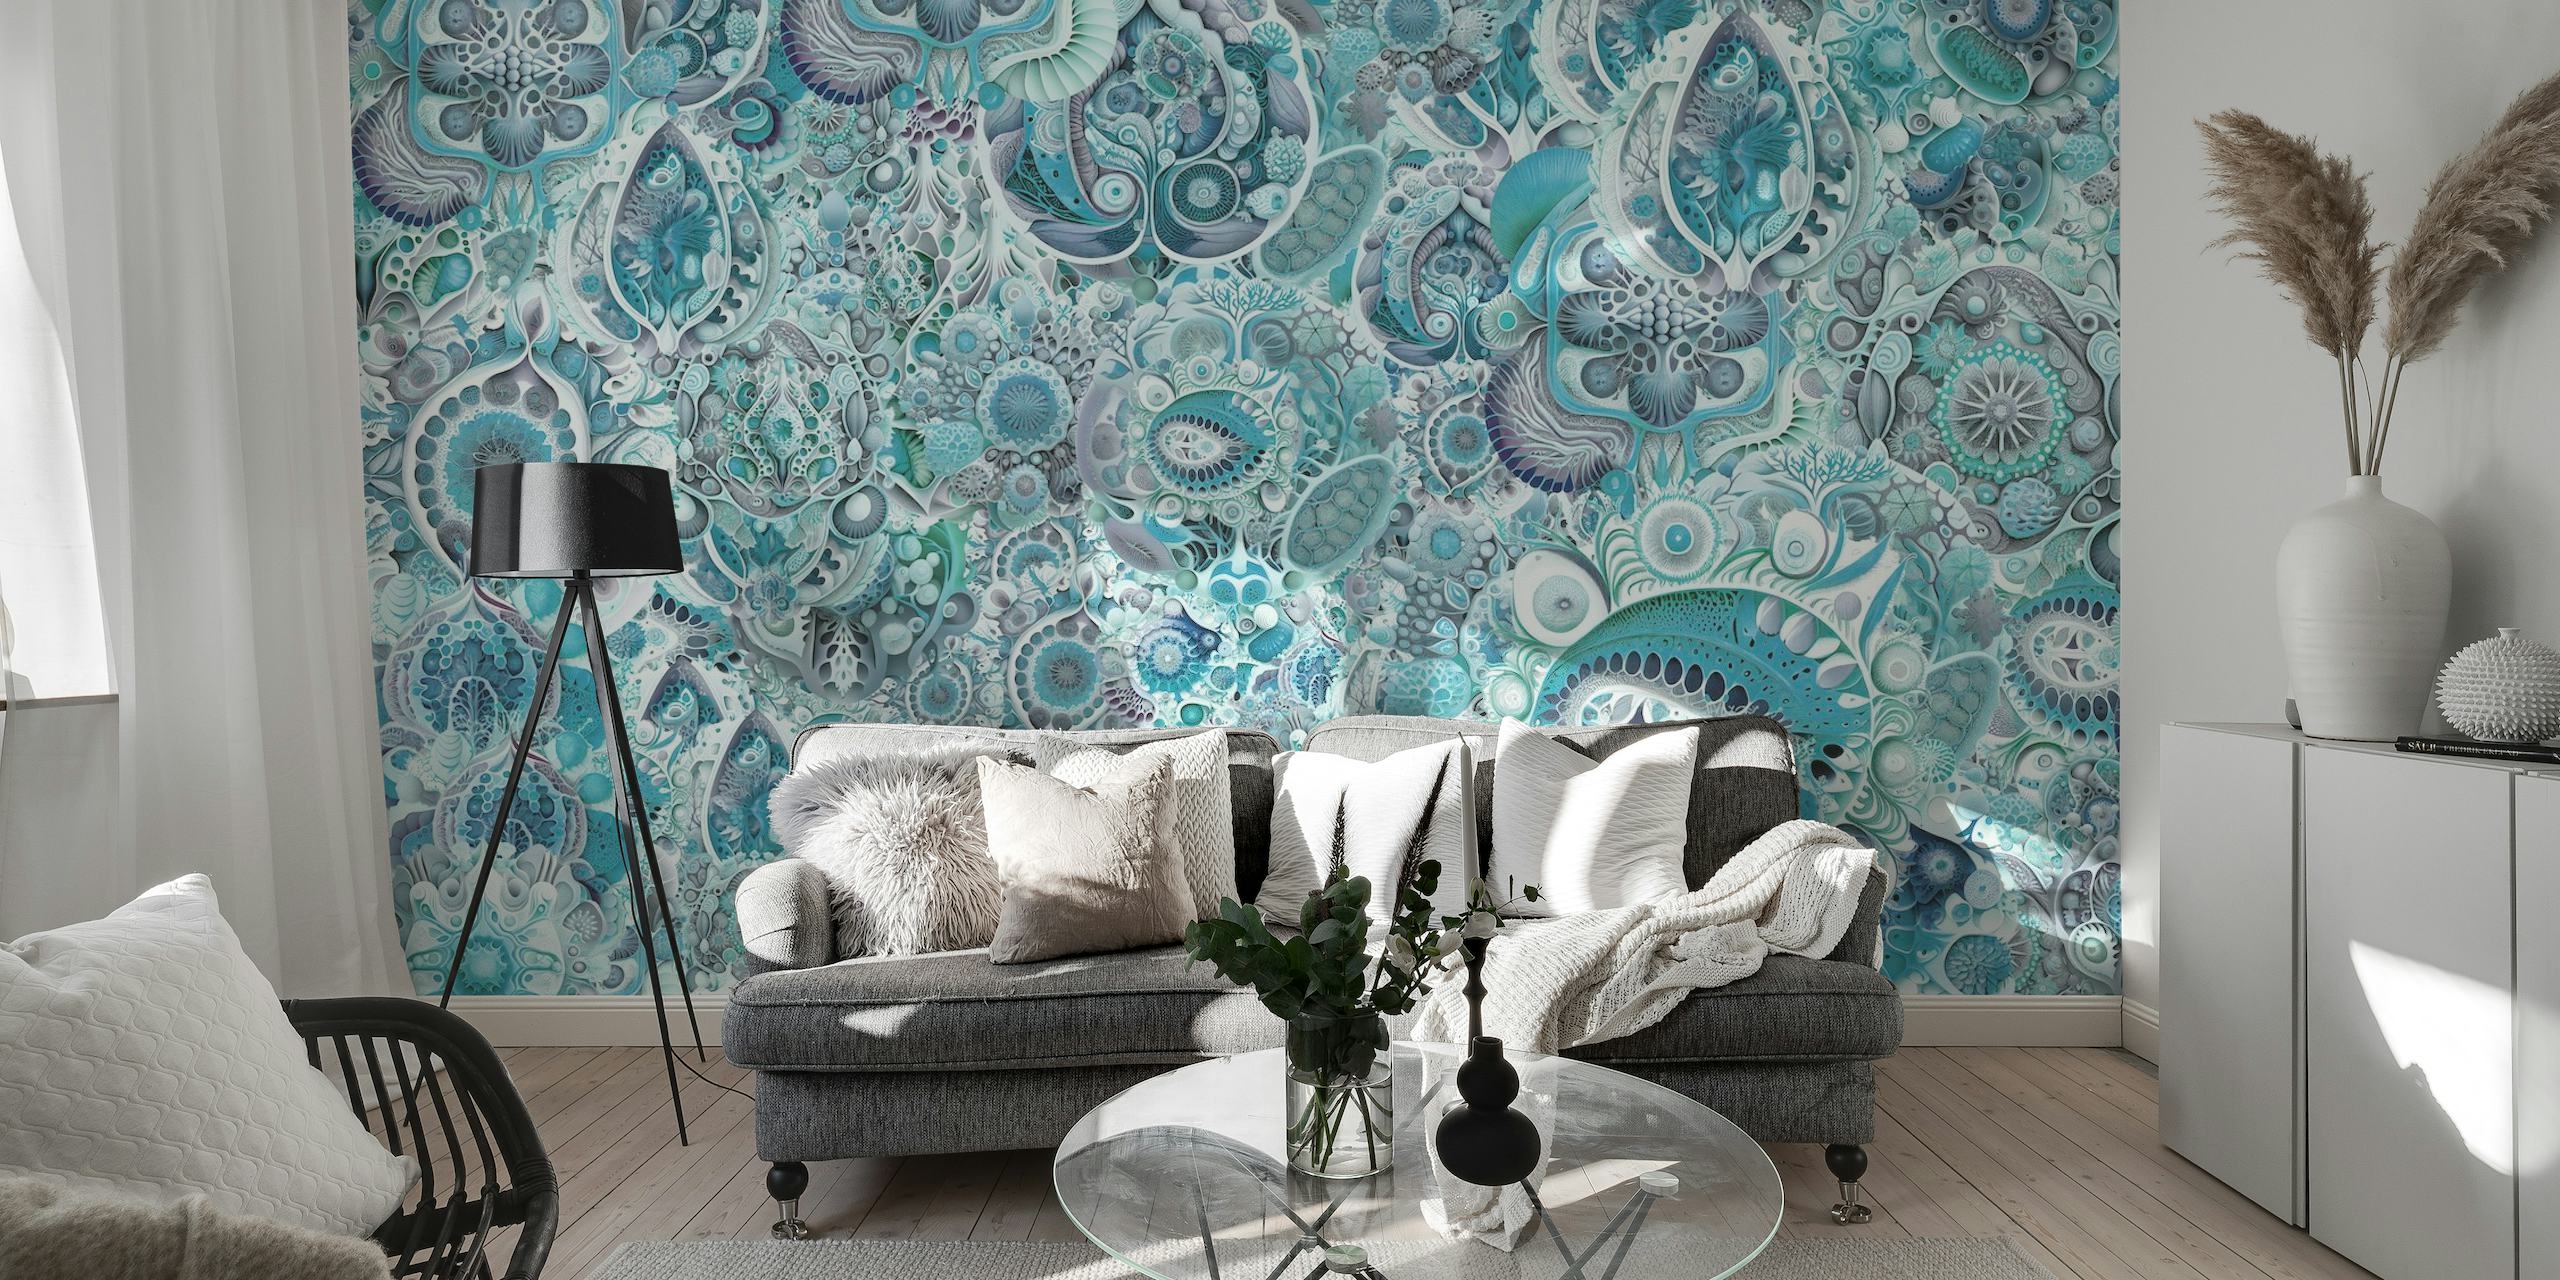 Mural de parede After Haeckel Blue com vida marinha intrincada e padrões florais em tons de azul.